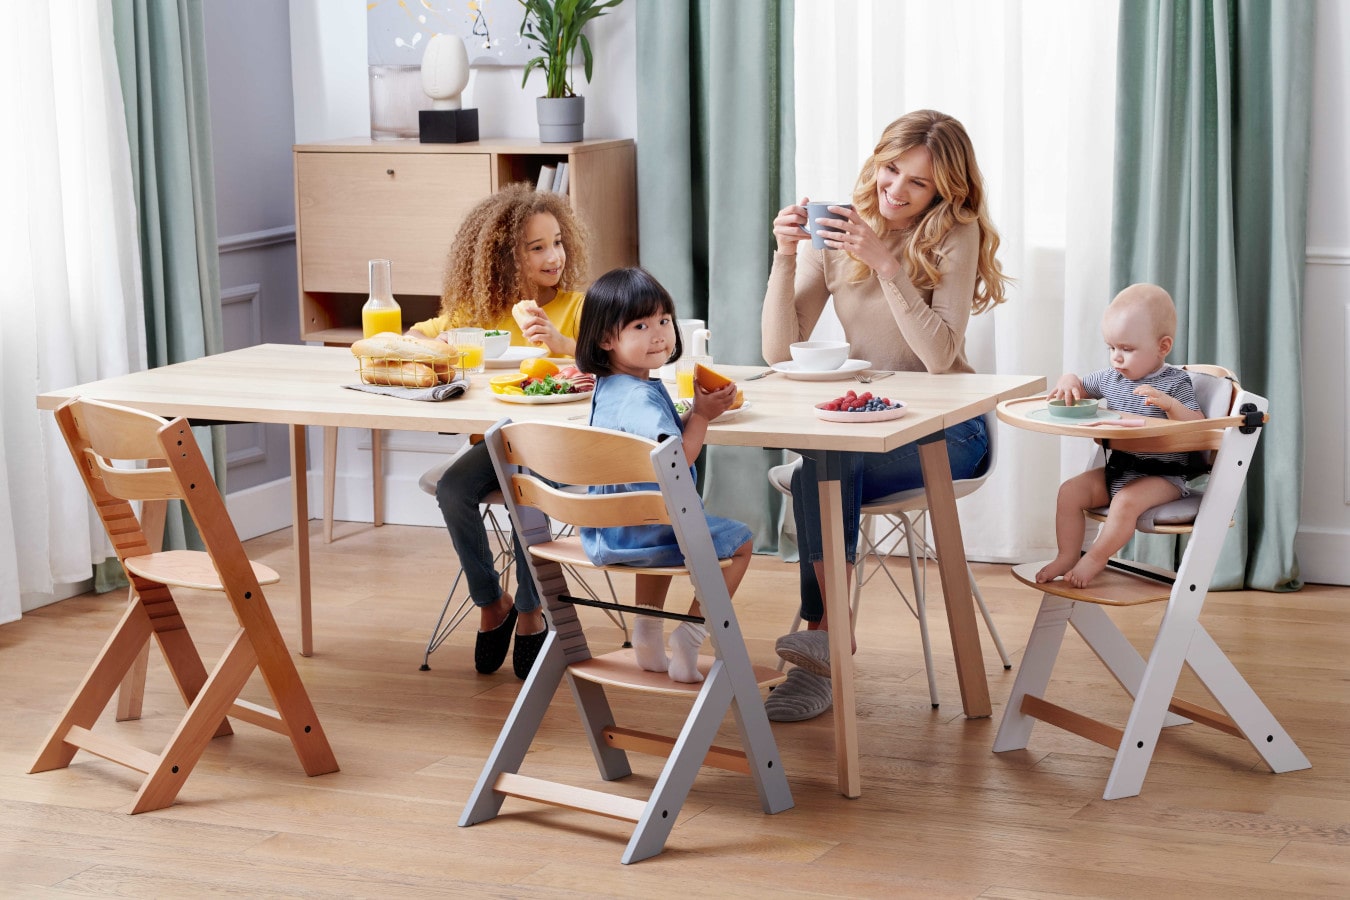 Mamá y tres niños están sentados en una mesa, la mamá está tomando un café, los niños están contentos. La trona para bebés ENOCK dispone de 3 funciones: desde una trona para bebés, hasta un sillón para niños mayores.